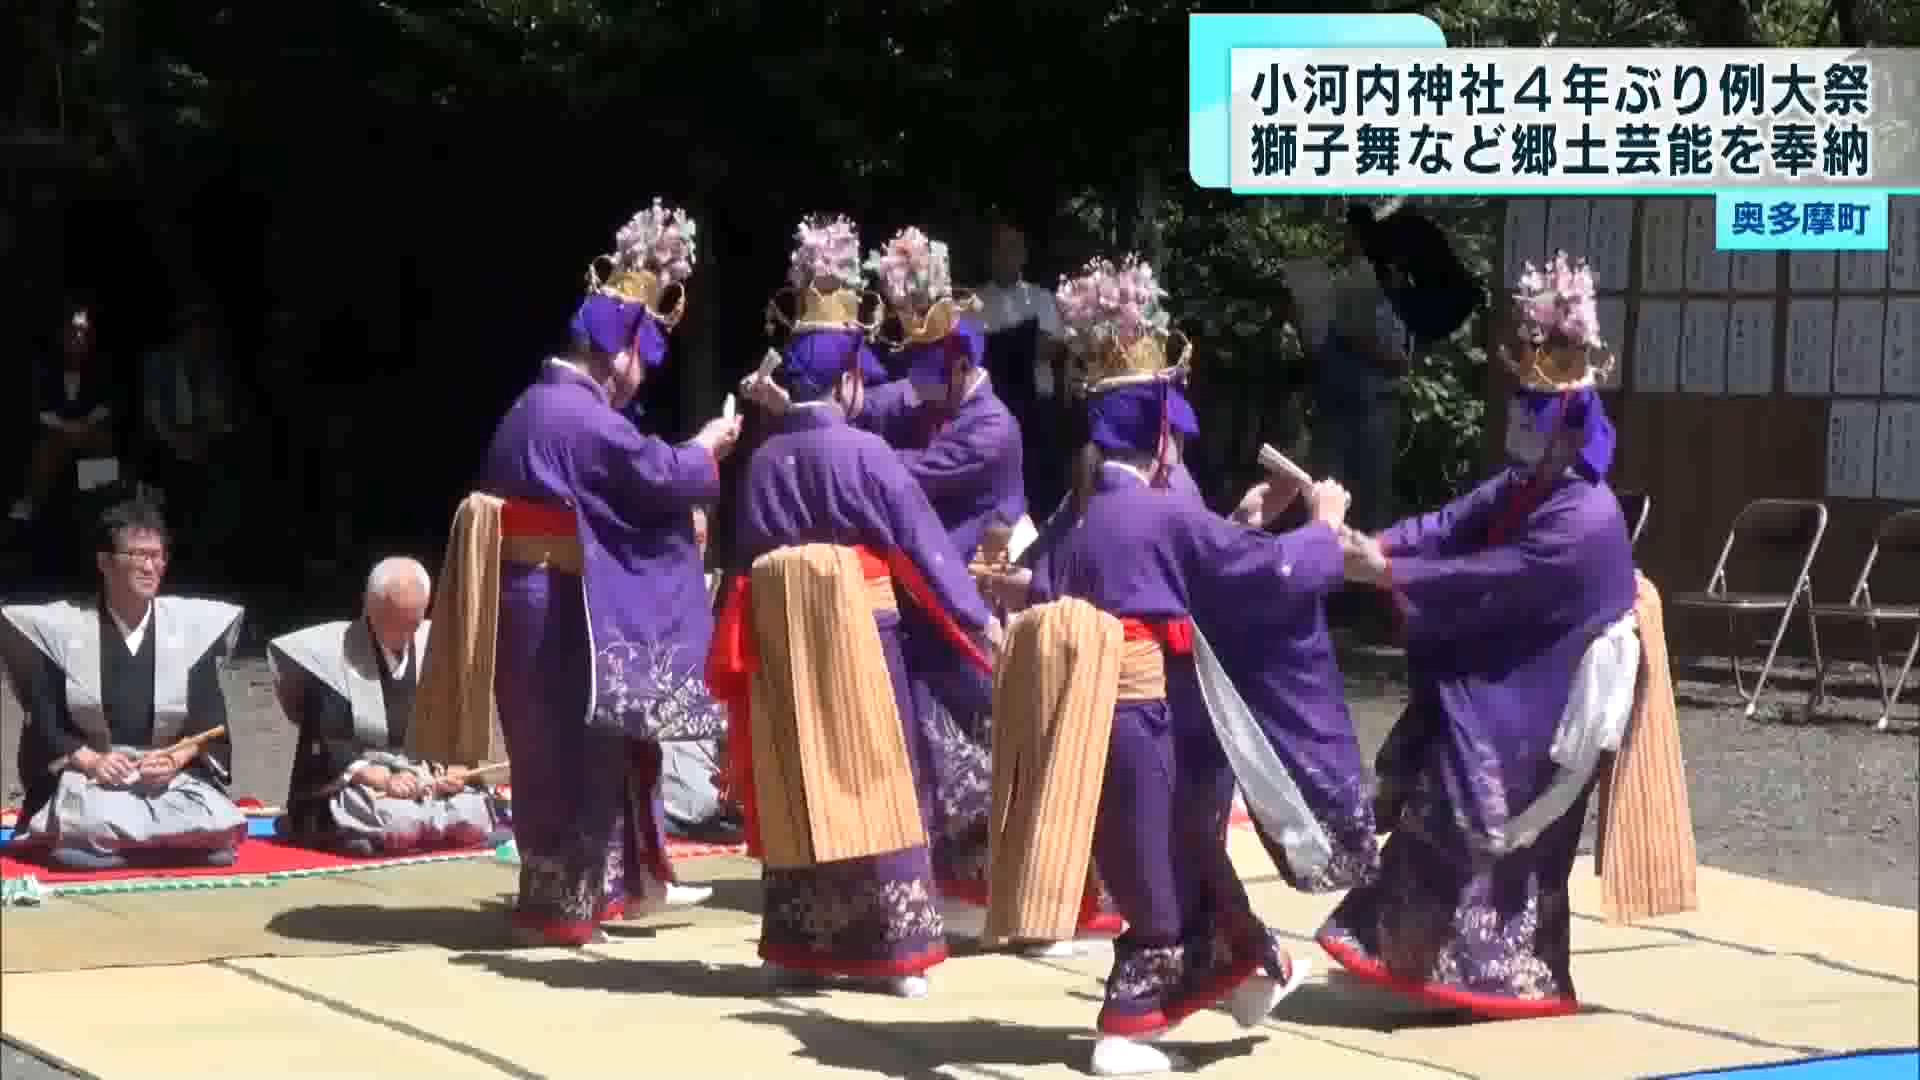 多摩川の源流にほど近い奥多摩町・小河内神社で9月10日に例大祭が開かれ、4年ぶりに郷土芸能が奉納されました。